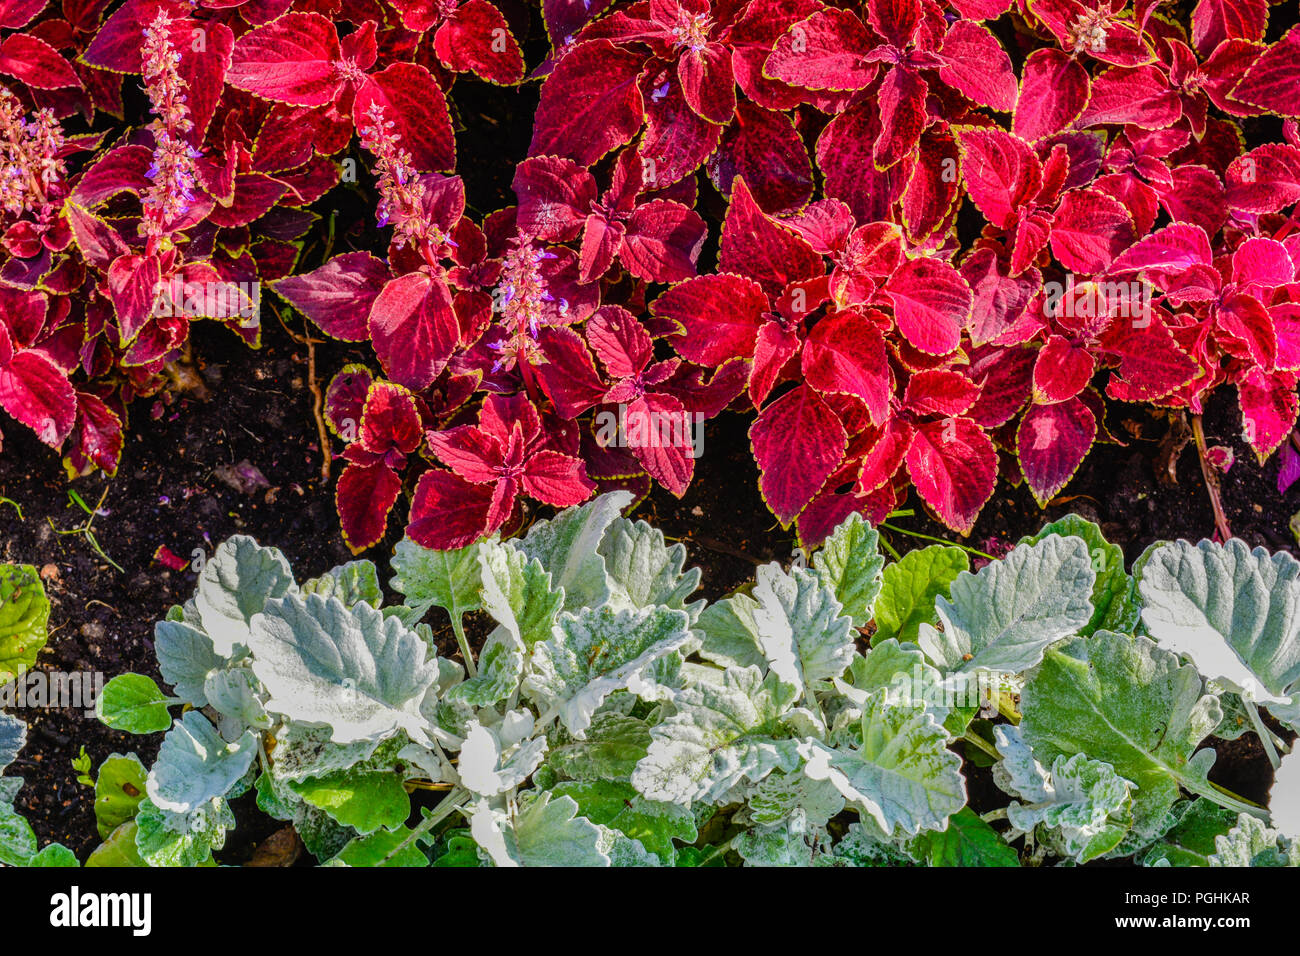 Bodendecker geblümten Teppich aus roten und grünen Blätter der Garten  pflanzen. Natur Szene mit dekorativen Blatt Garten pflanzen. Jahrgang  Sommer Blumen backgr Stockfotografie - Alamy